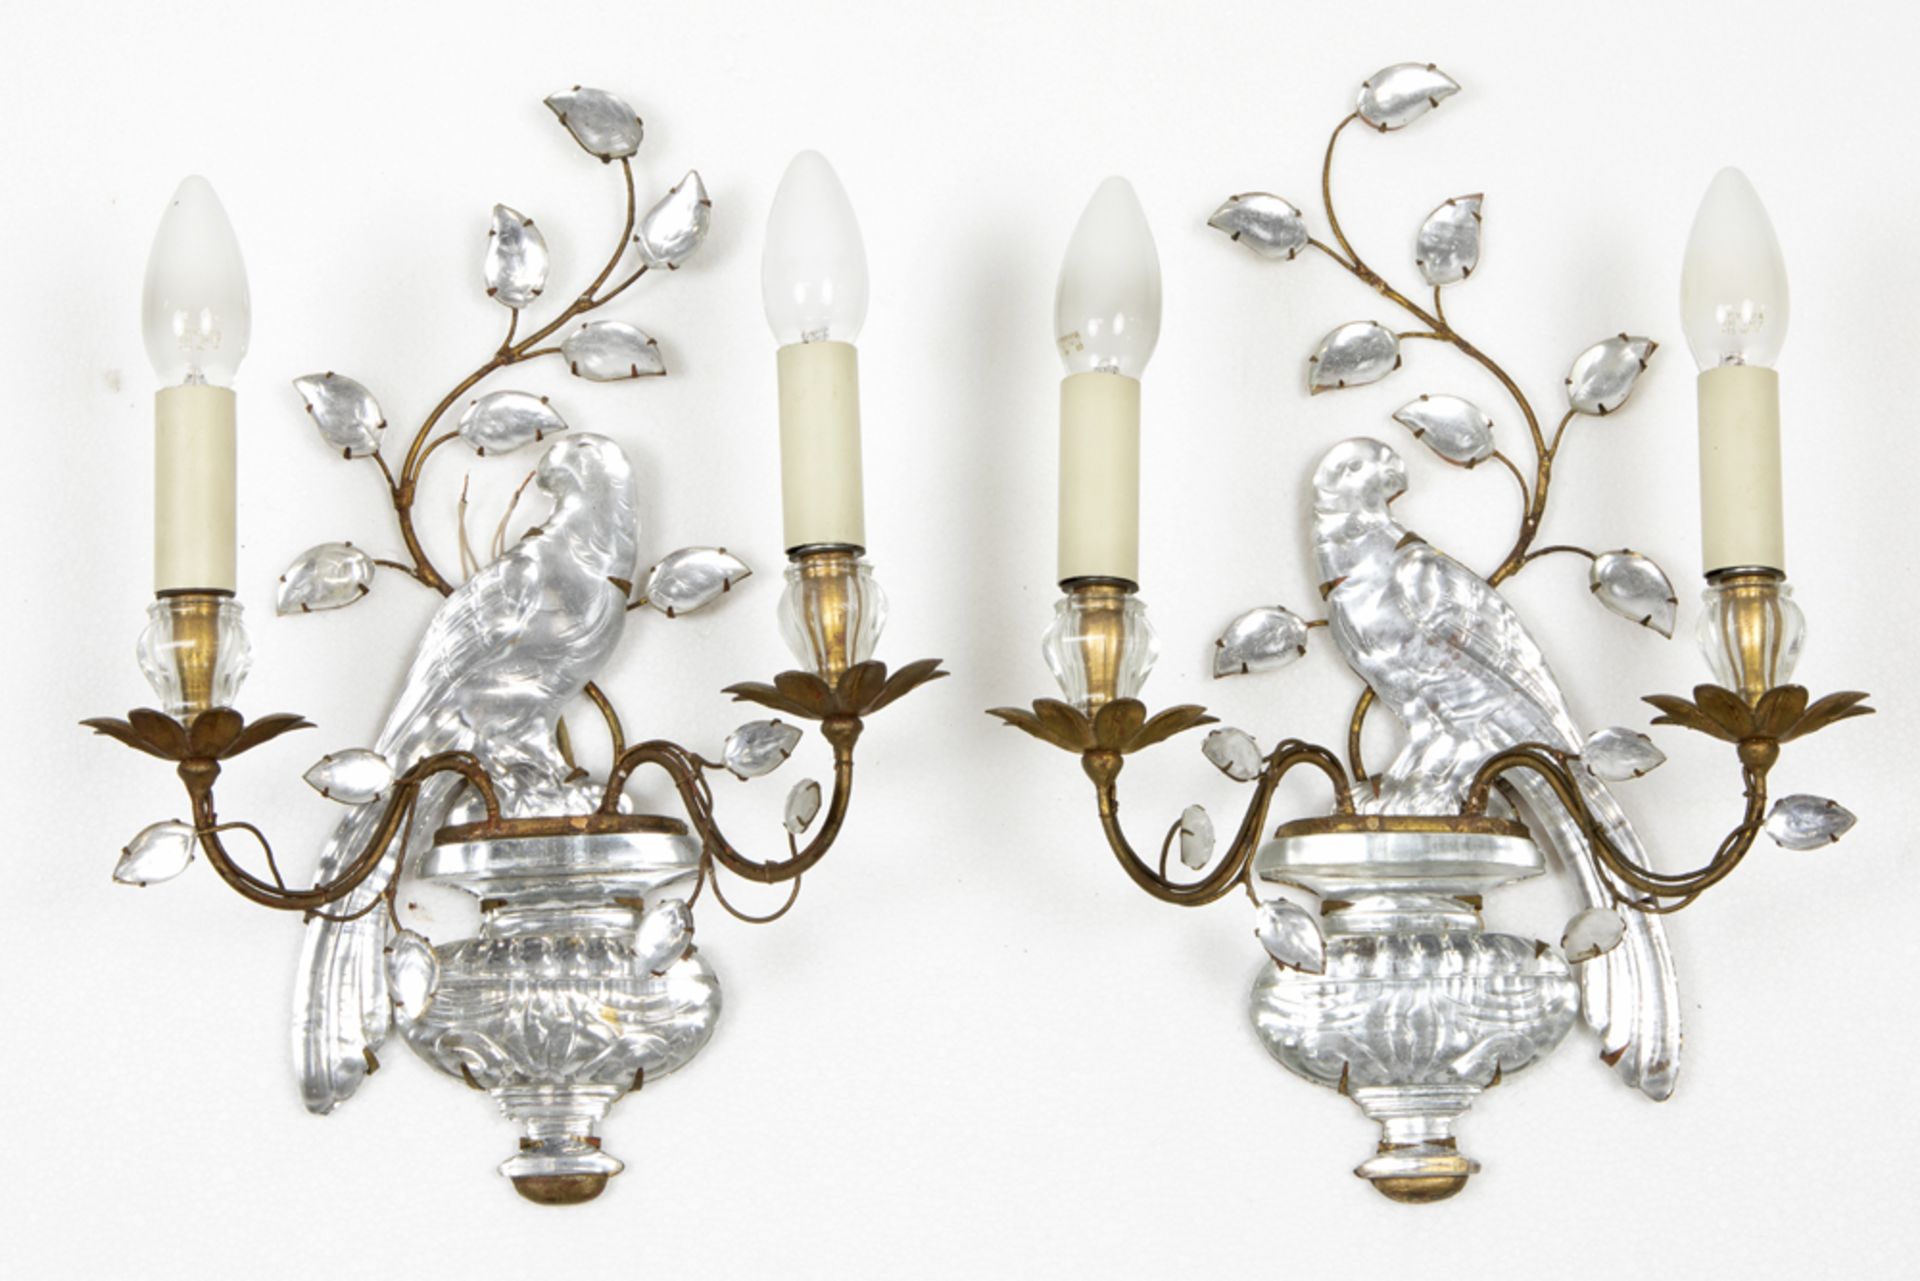 pair of presumably Italian wall lights in metal and glass || Paar allicht Italiaanse applieken met